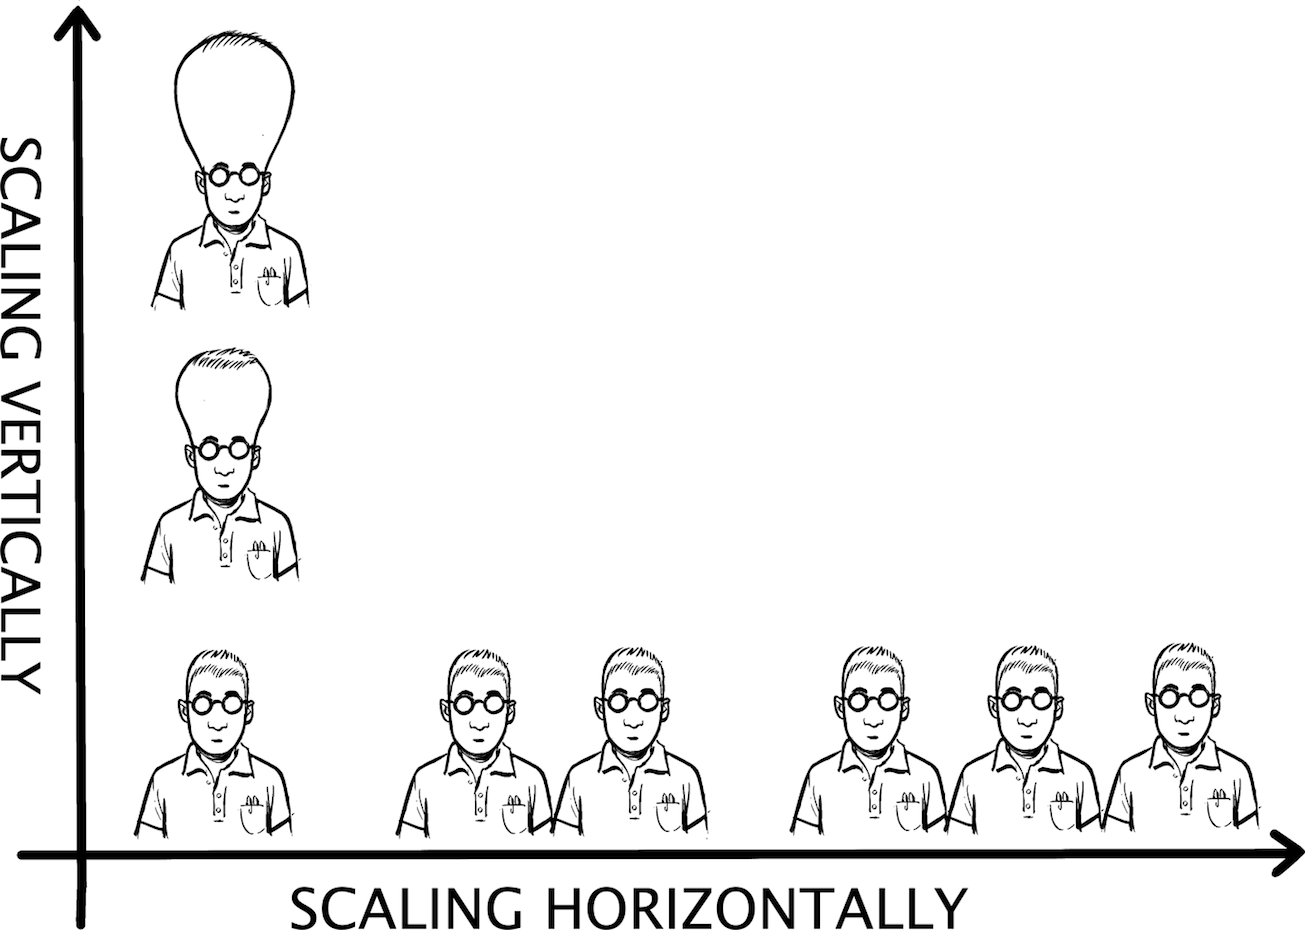 Horizontal scaling seems more natural